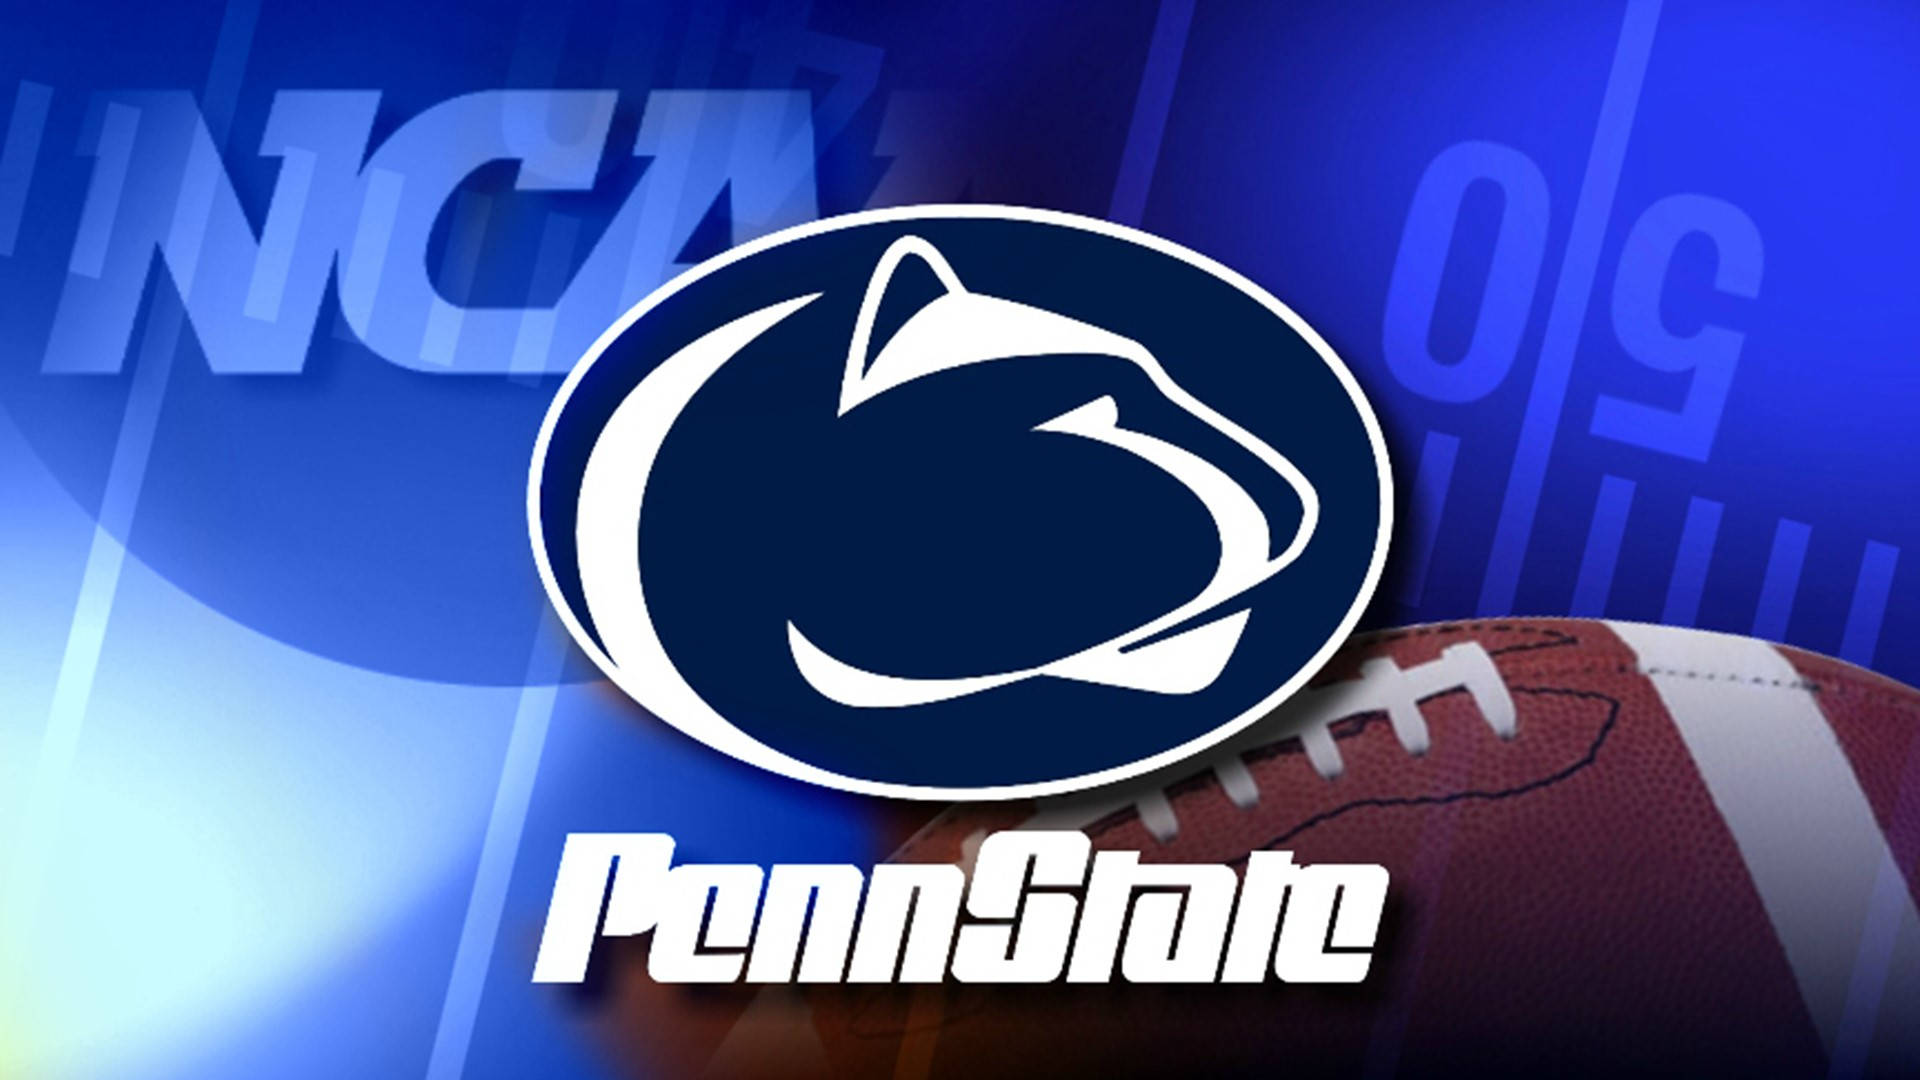 Pennstate Fotbollslogo Med Fotboll Och Penn State-logo. Wallpaper